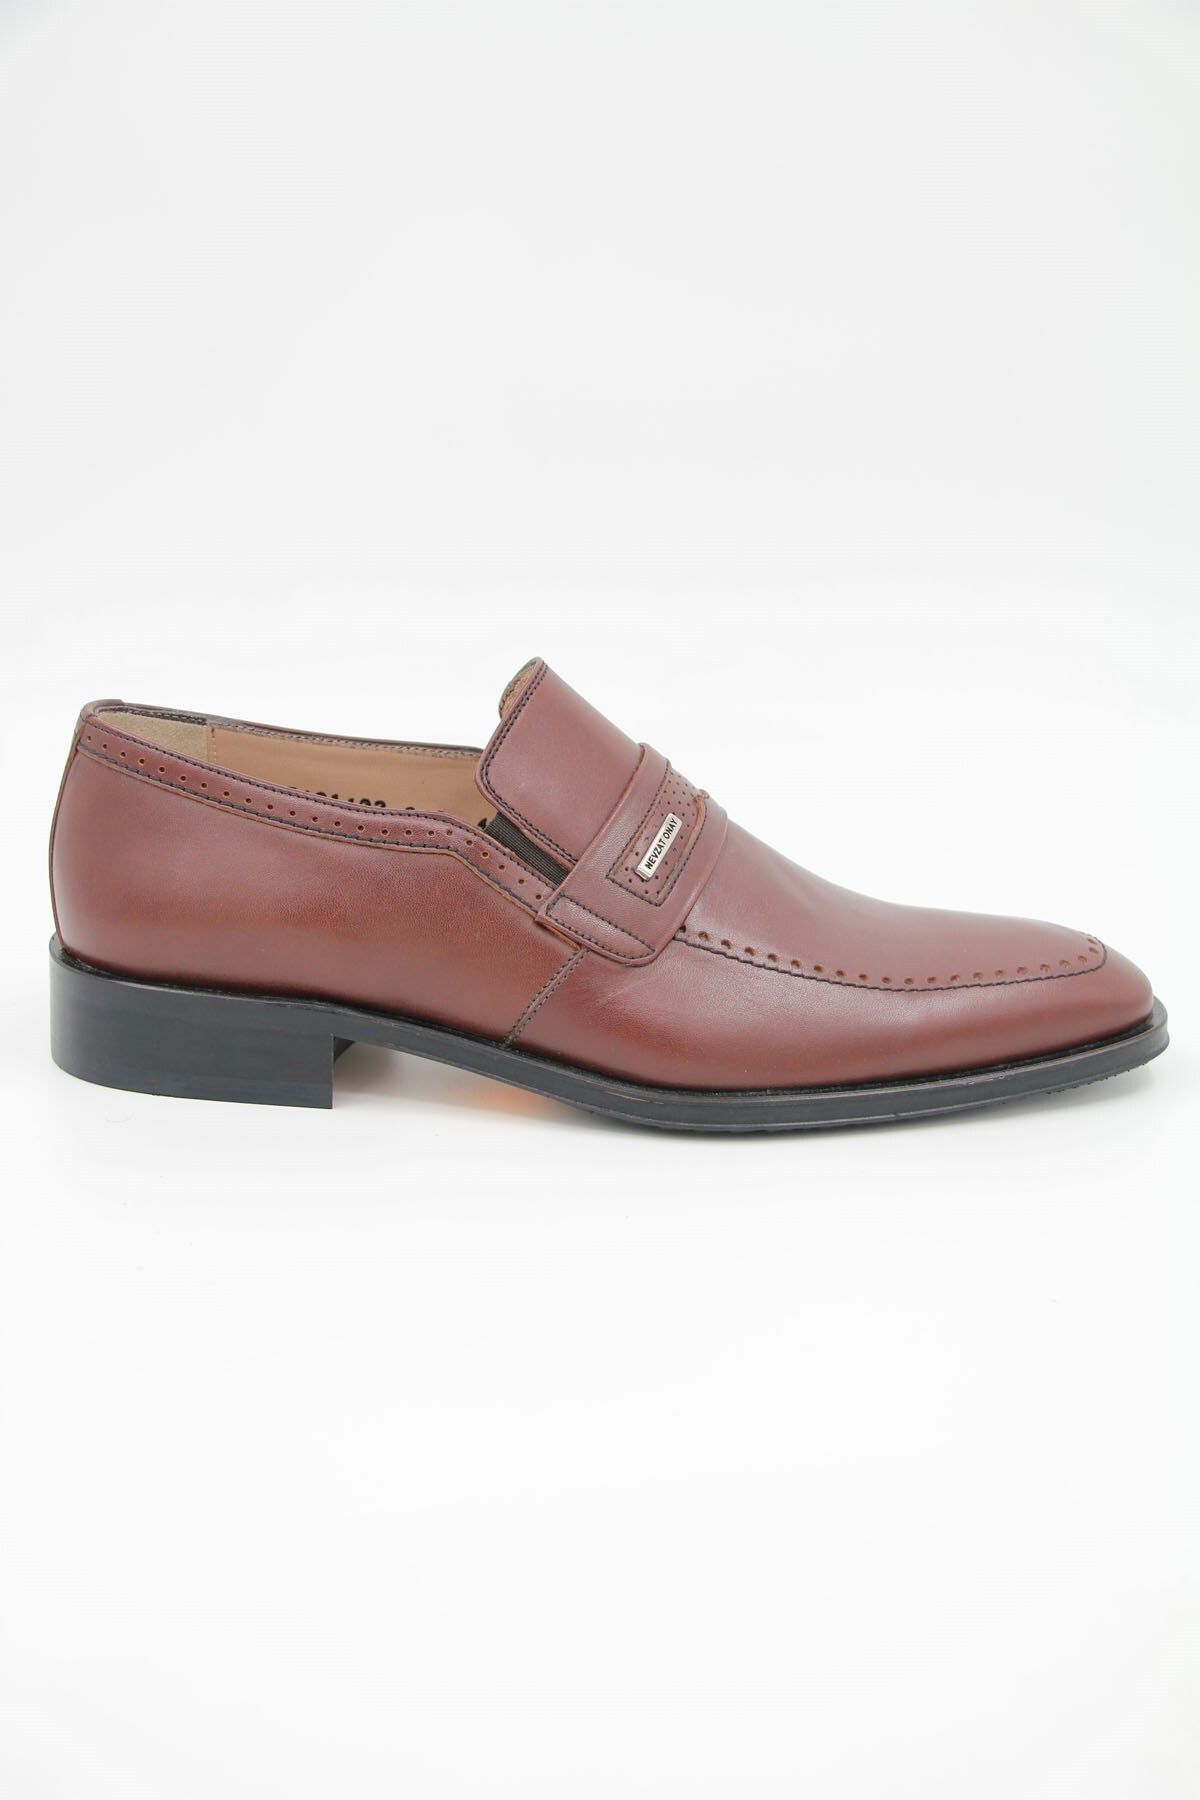 Nevzat Onay 640-223 Erkek Klasik Ayakkabı - Kahverengi